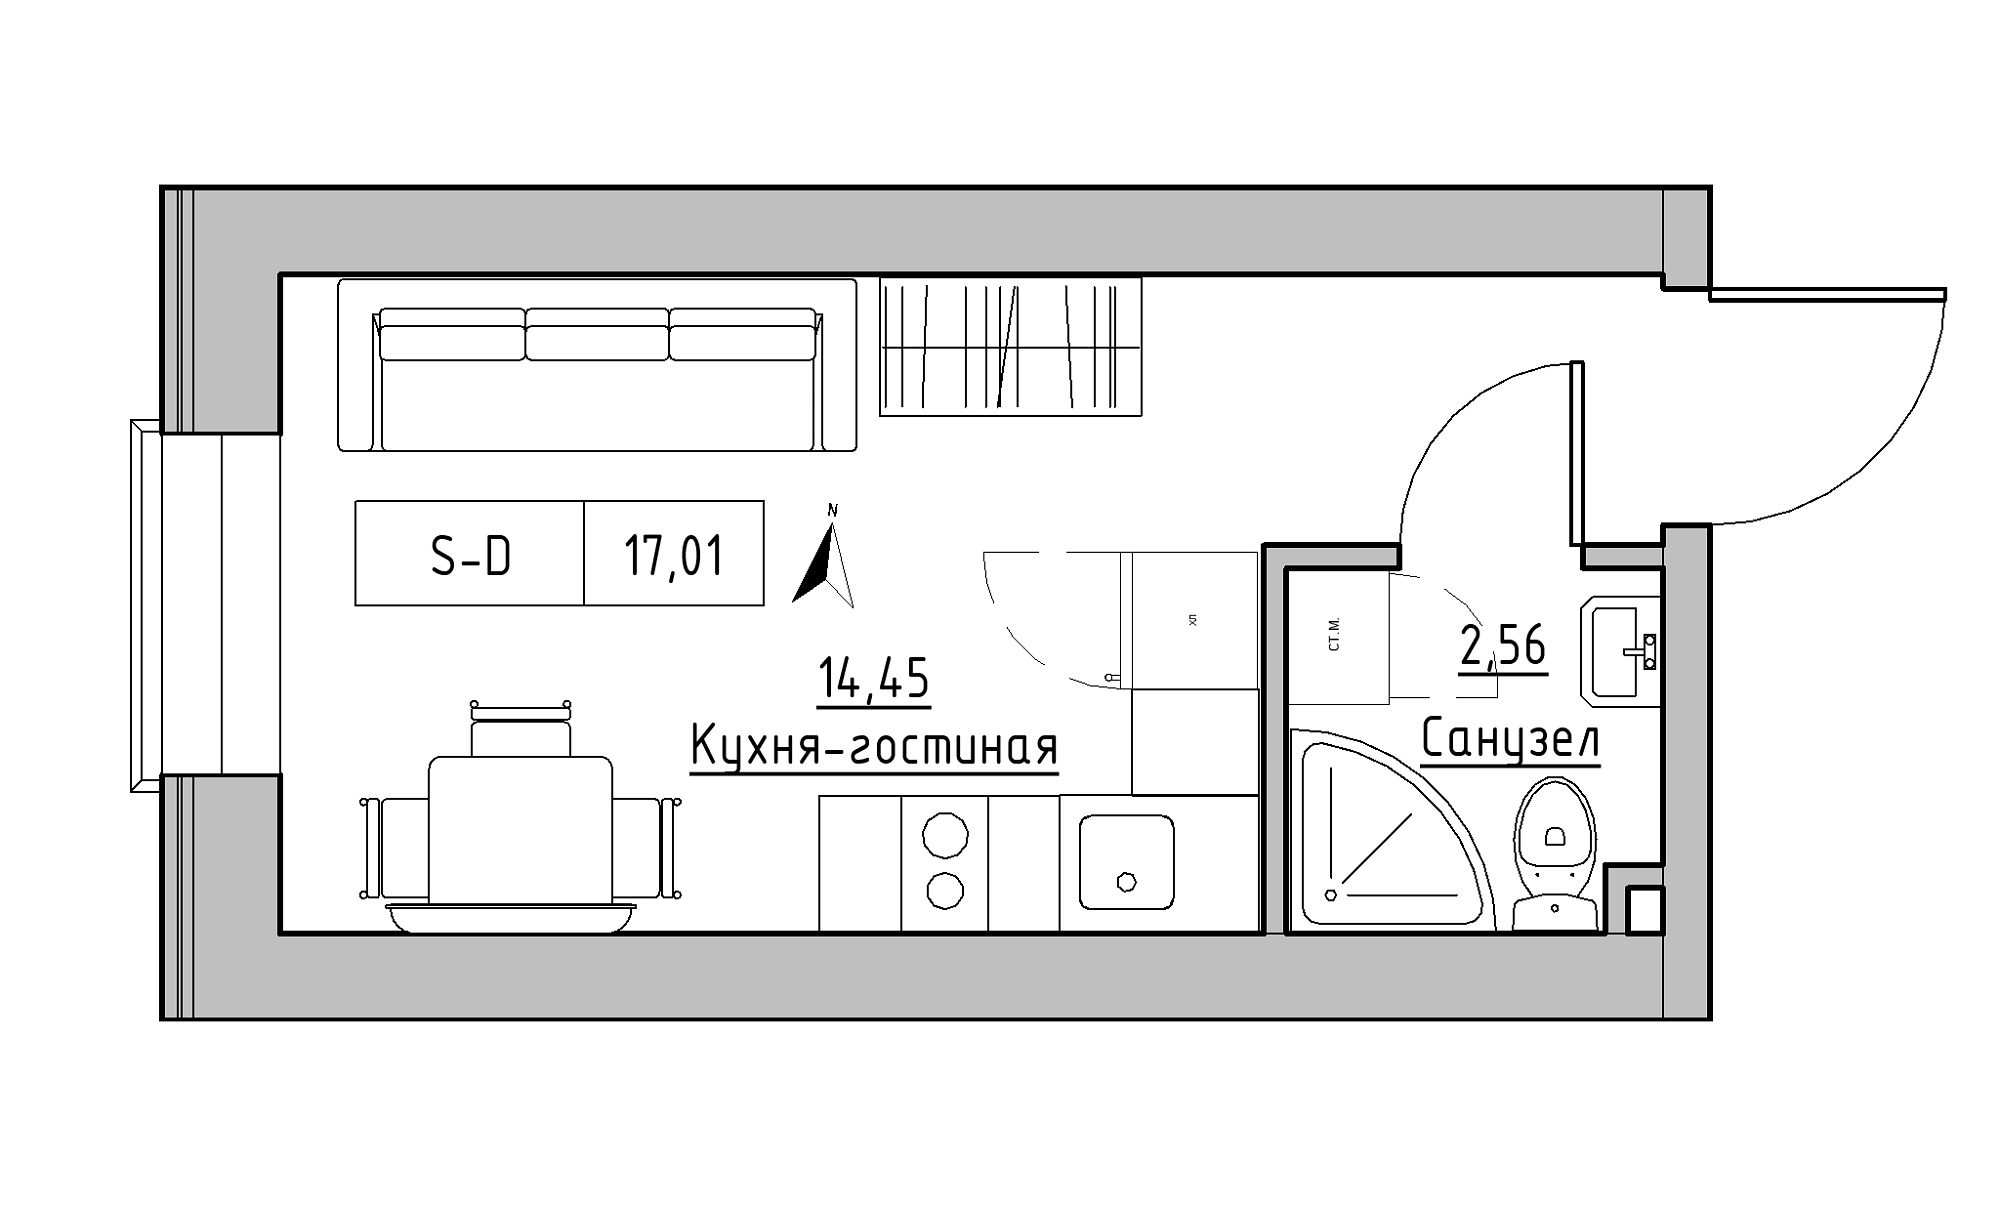 Планування Smart-квартира площею 17.01м2, KS-023-05/0002.